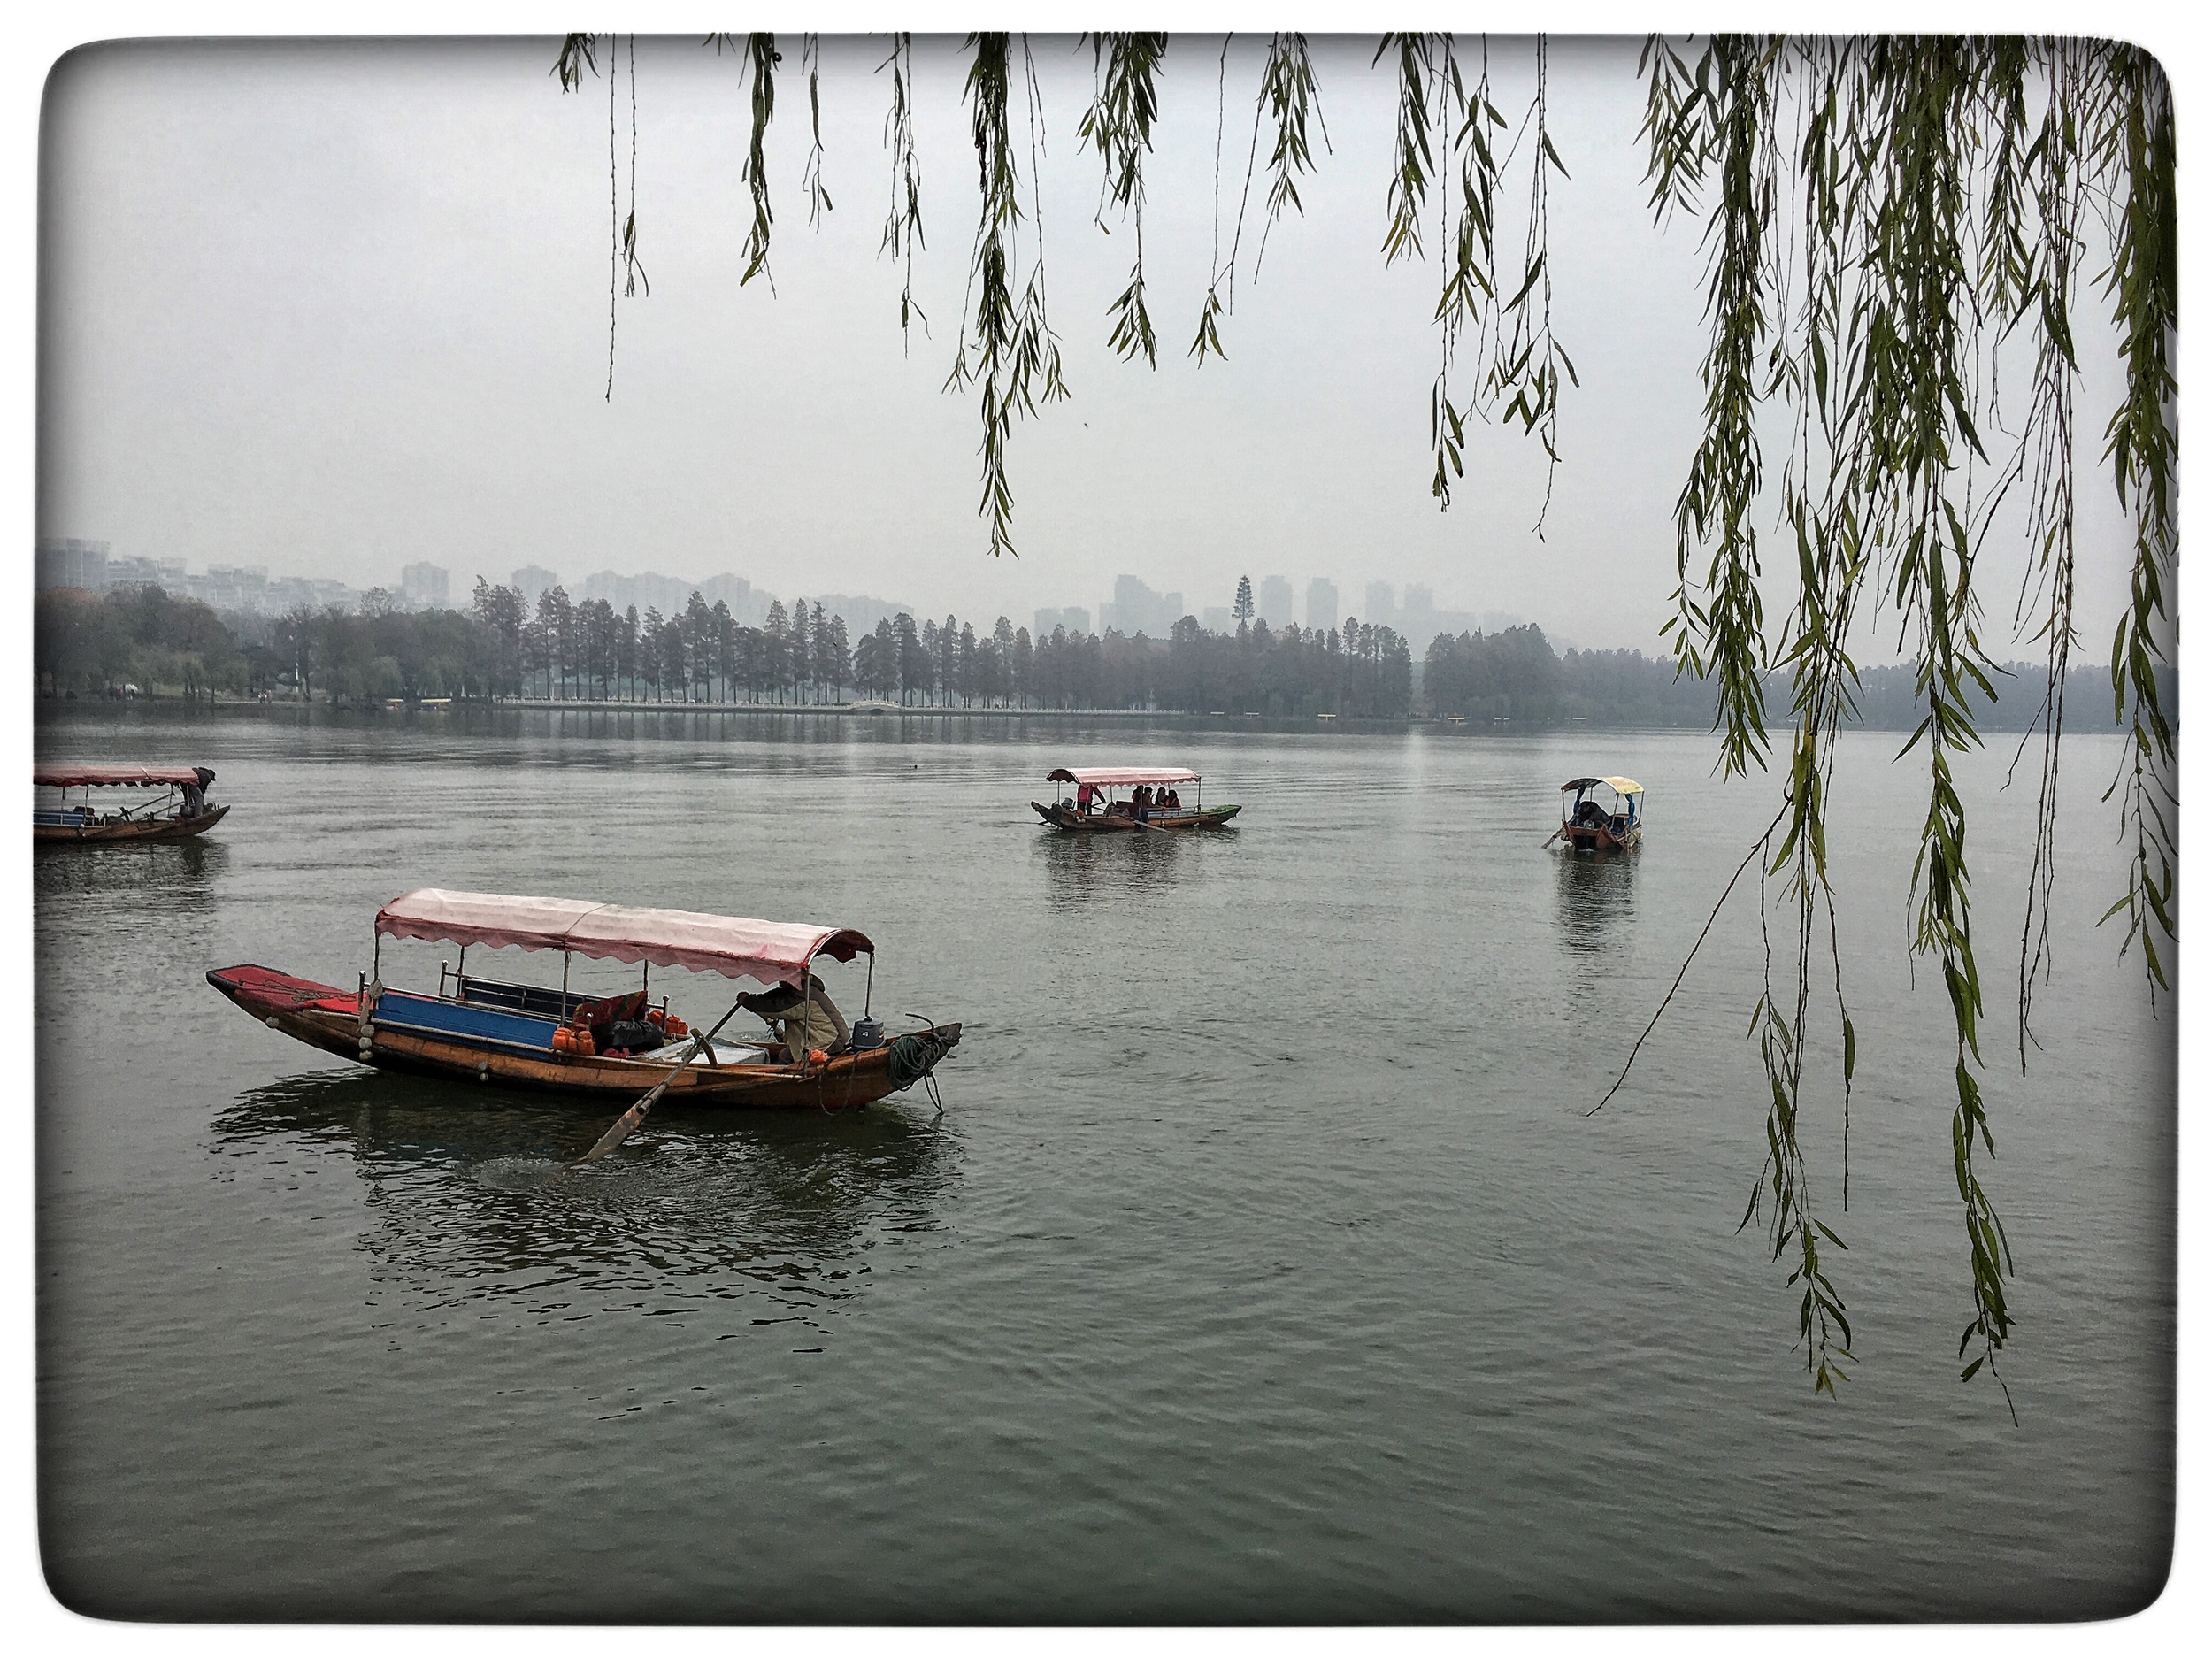  East Lake, Wuhan 